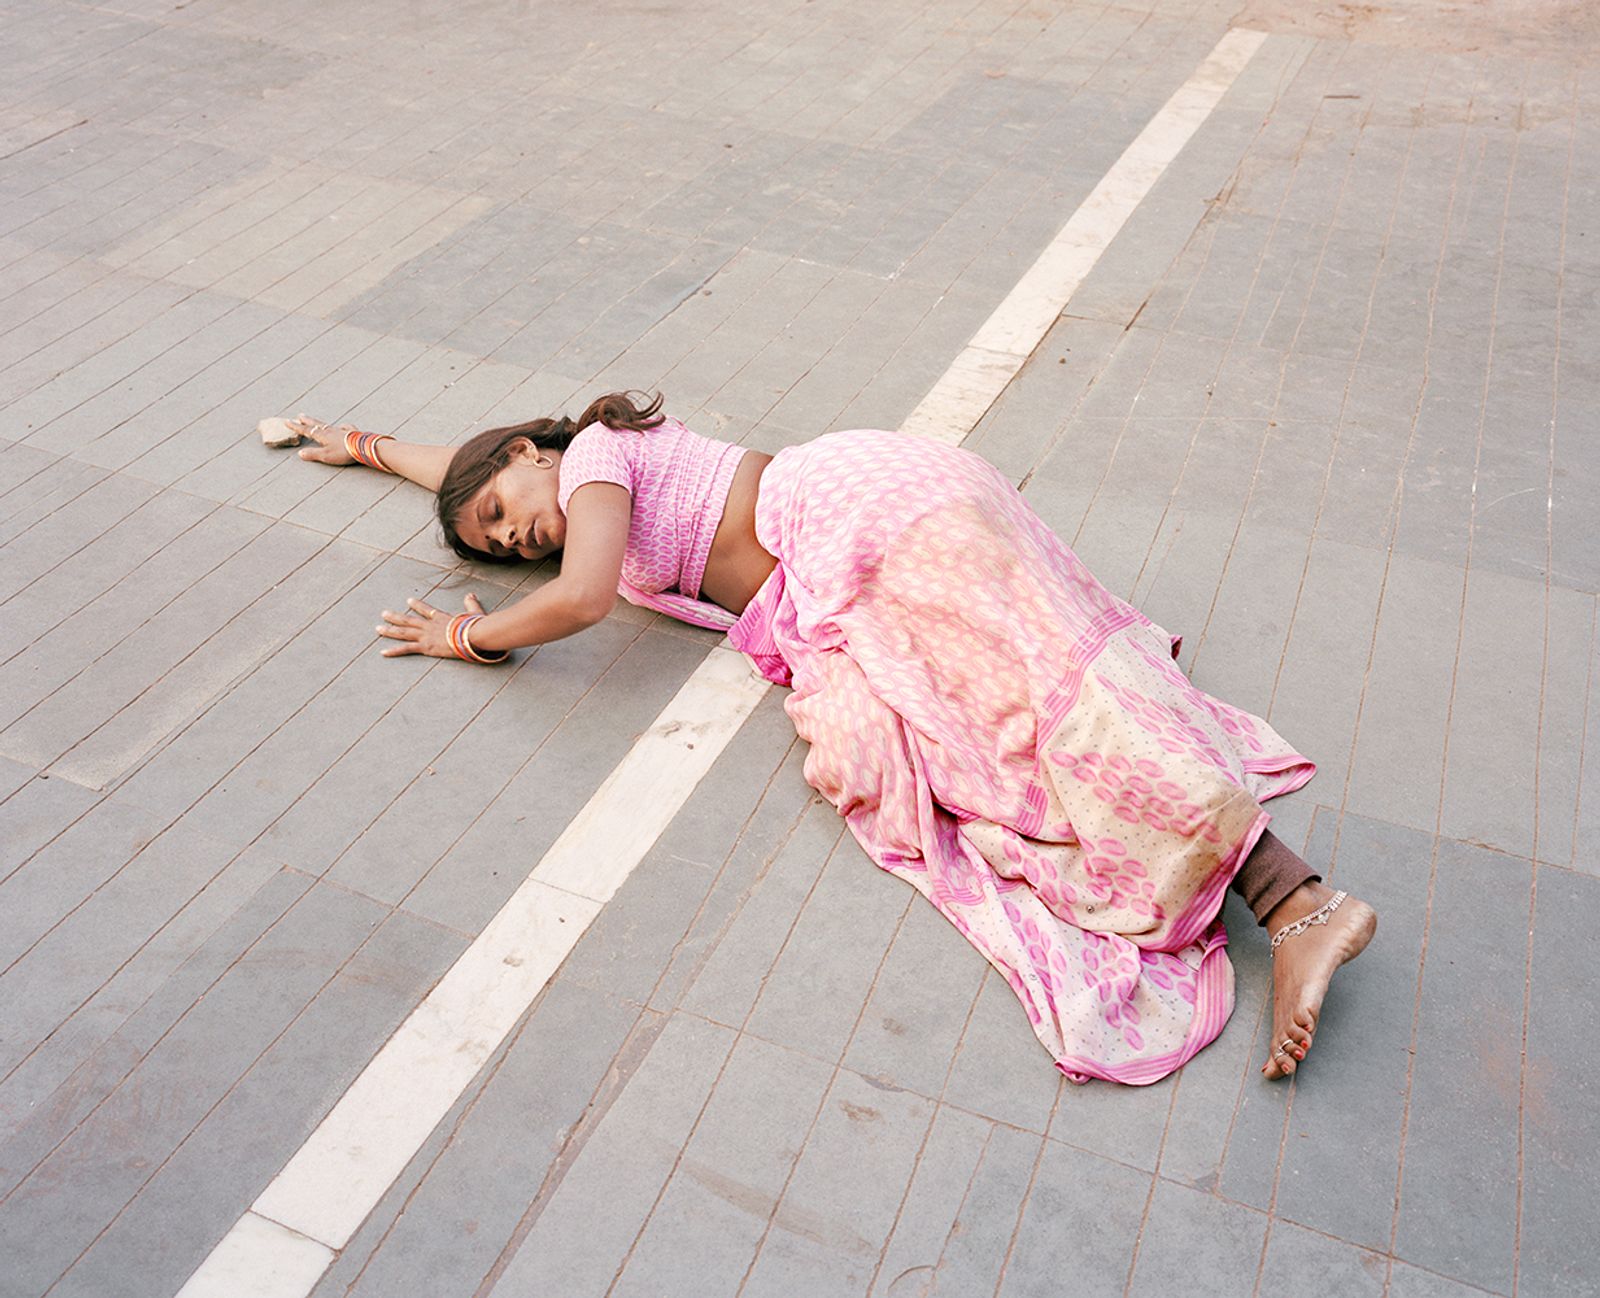 © Vasantha Yogananthan - Lakshmana Rekha, Chitrakoot, Uttar Pradesh, India, 2013